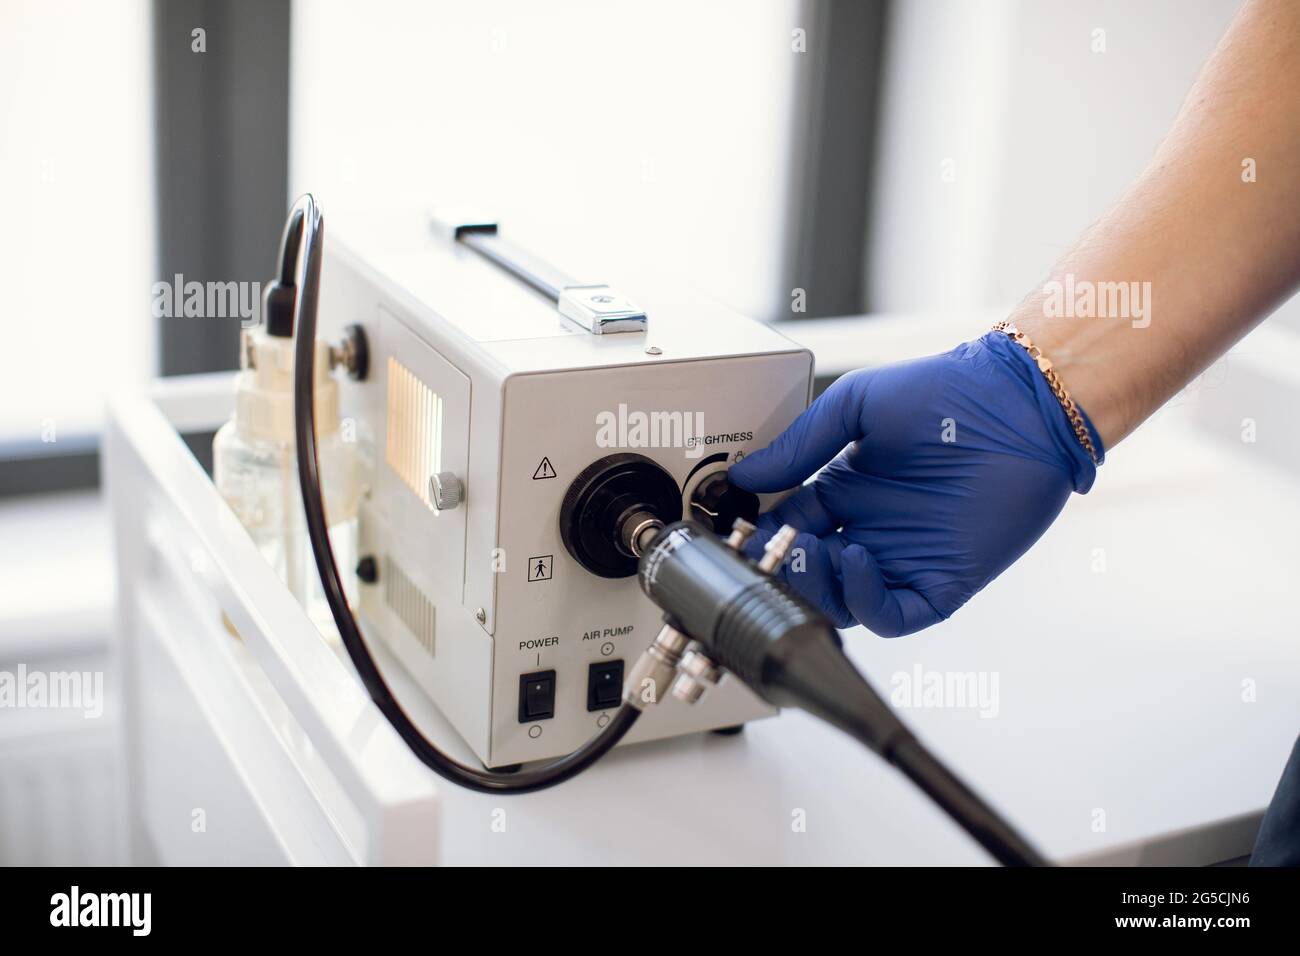 Endoskopie im Krankenhaus. Nahaufnahme eines modernen gastroduodenoskopischen Geräts und der Hand eines nicht erkennbaren Arztes in einem sterilen blauen Gummihandschuh, der sich auf das Endoskopieverfahren vorbereitet Stockfoto